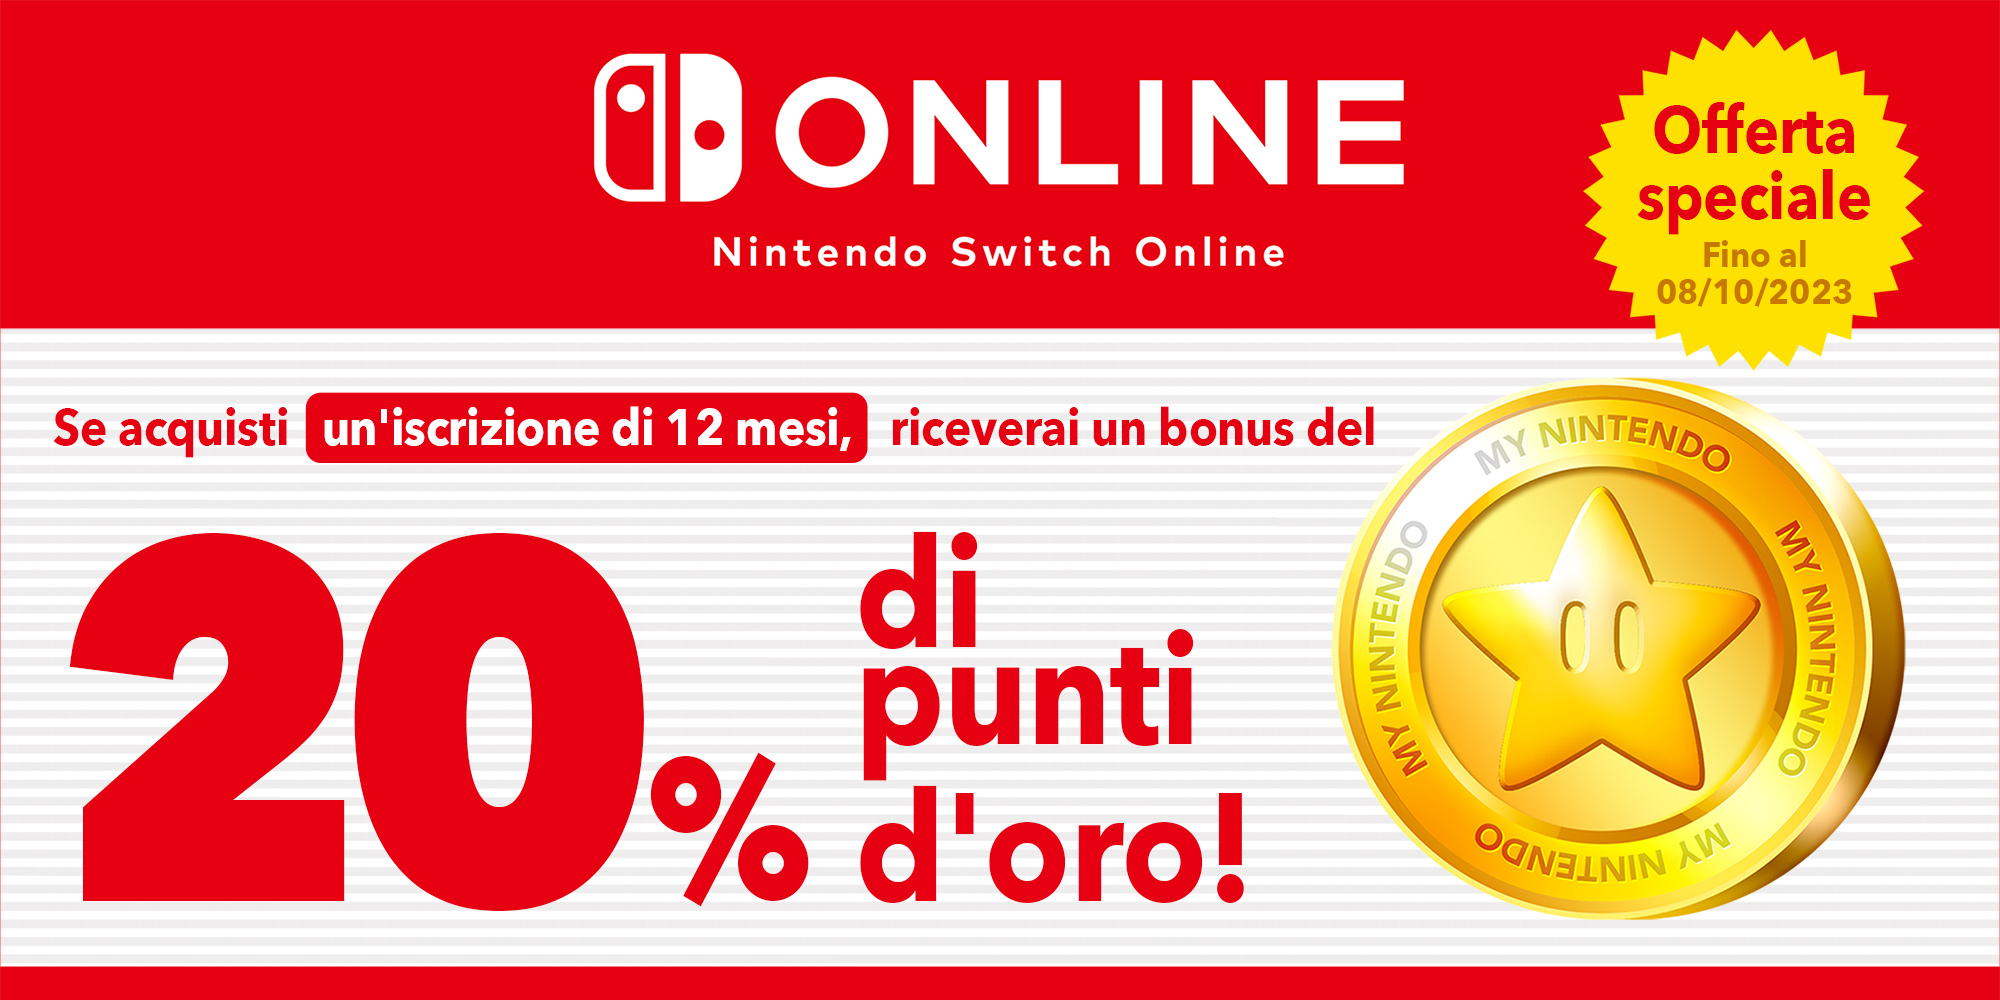 Offerta speciale: puoi ottenere fino a CHF 18.00 in punti d'oro con un'iscrizione di 12 mesi a Nintendo Switch Online!